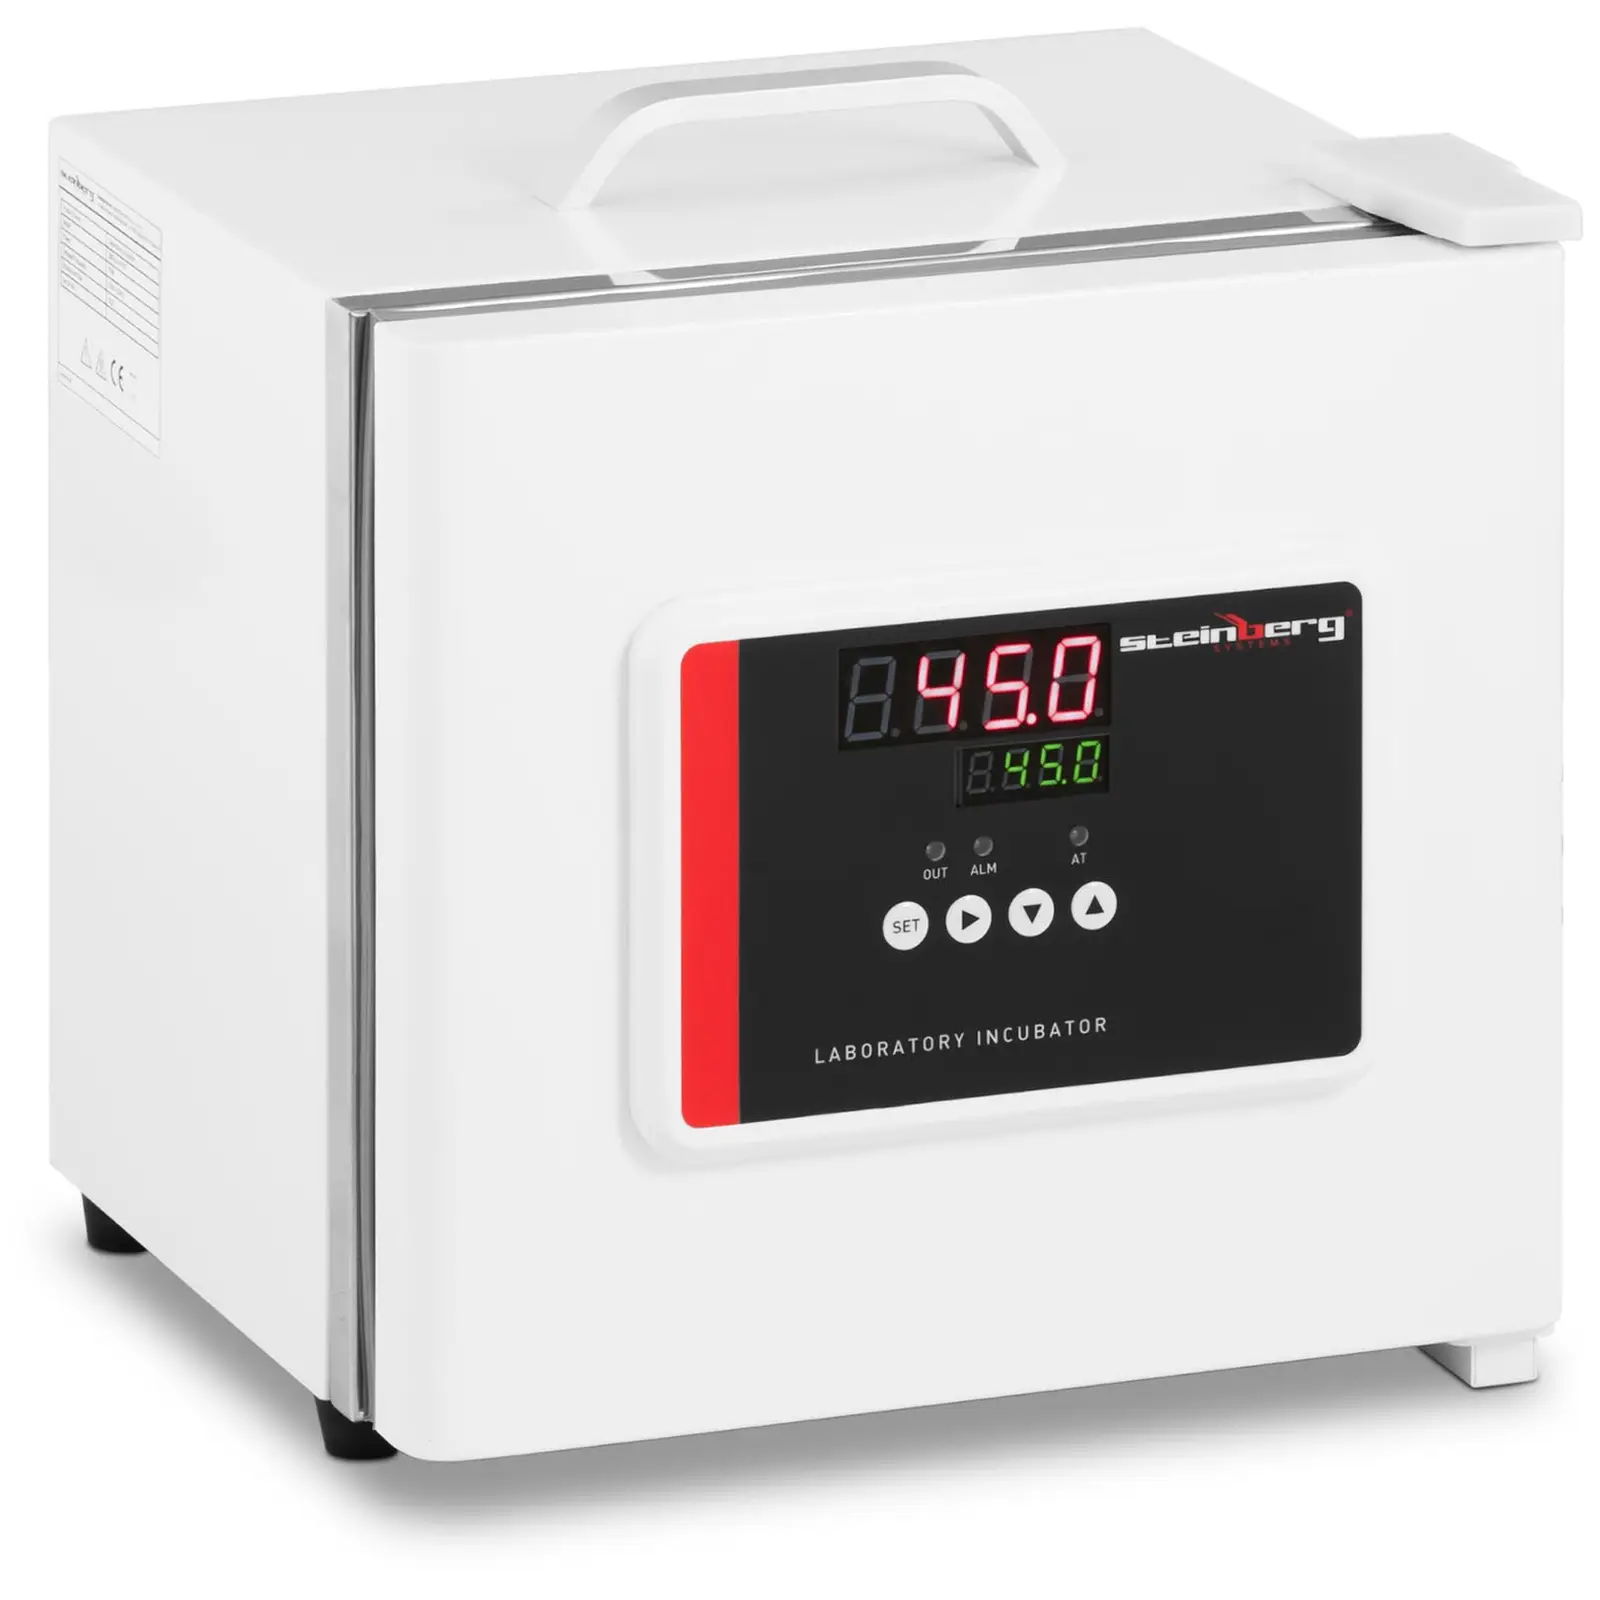 Värmeskåp till laboratorium - Upp till 45 °C - 7,5 L - 12 V DC